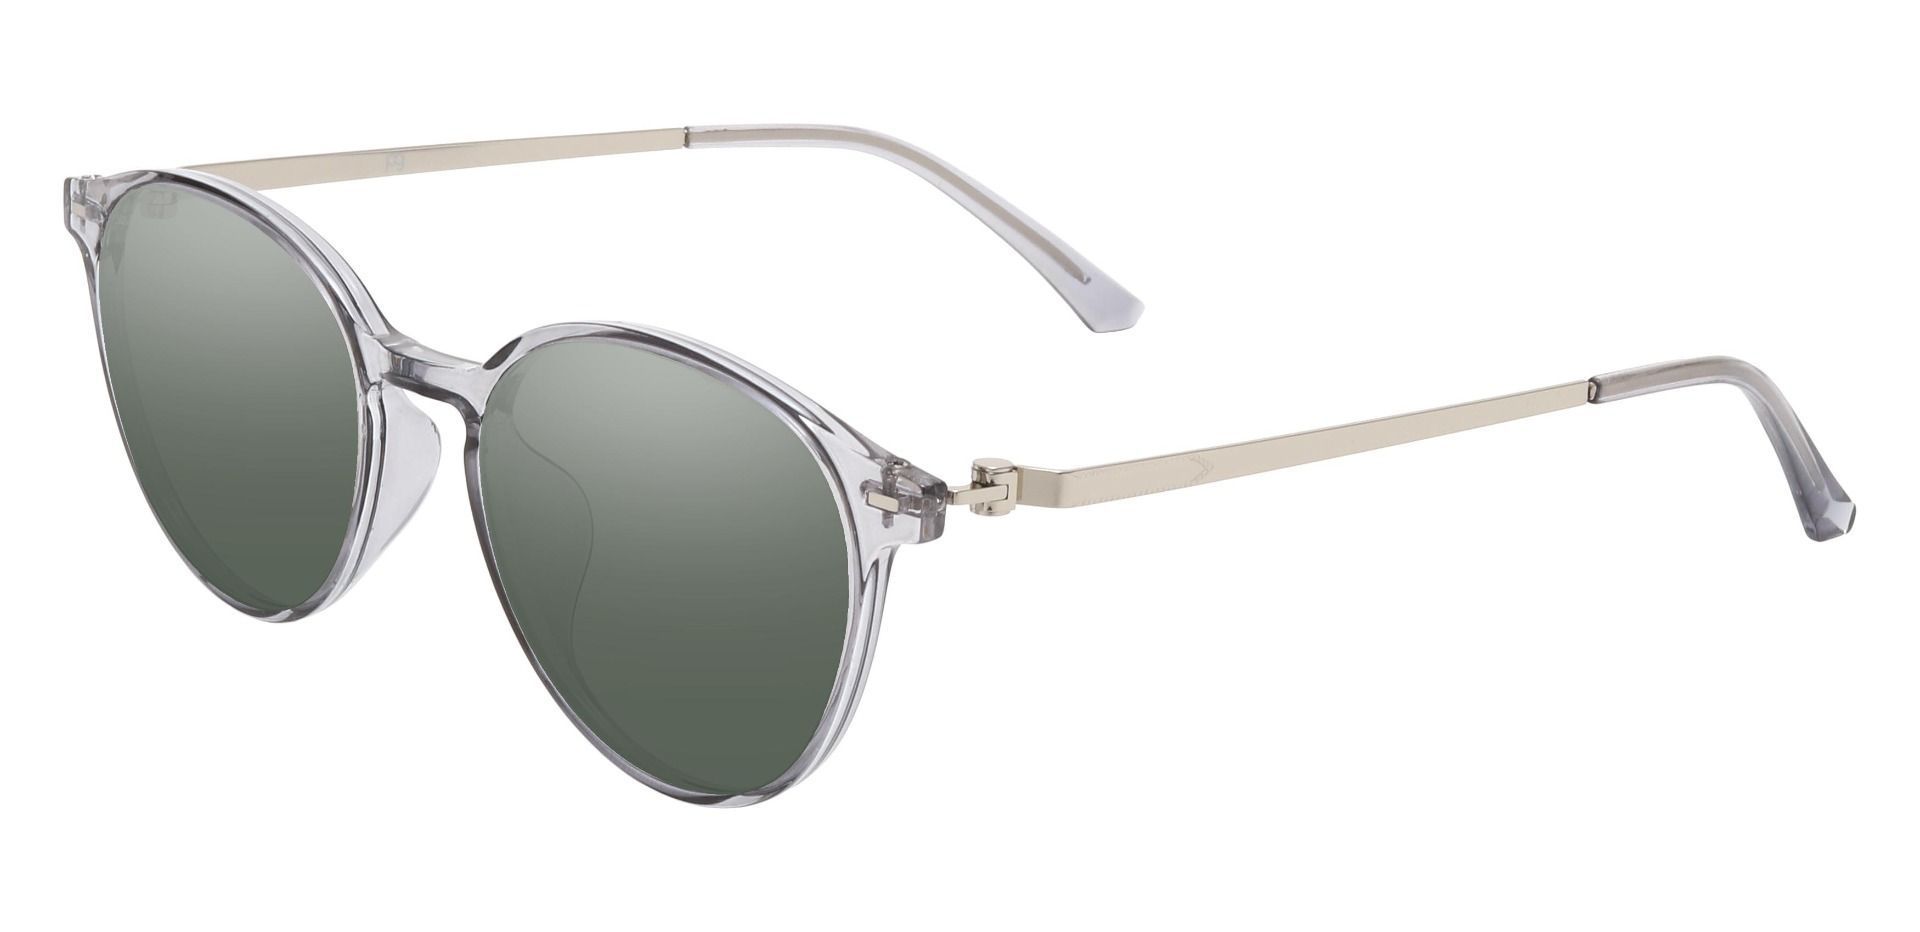 Springer Round Reading Sunglasses - Gray Frame With Green Lenses